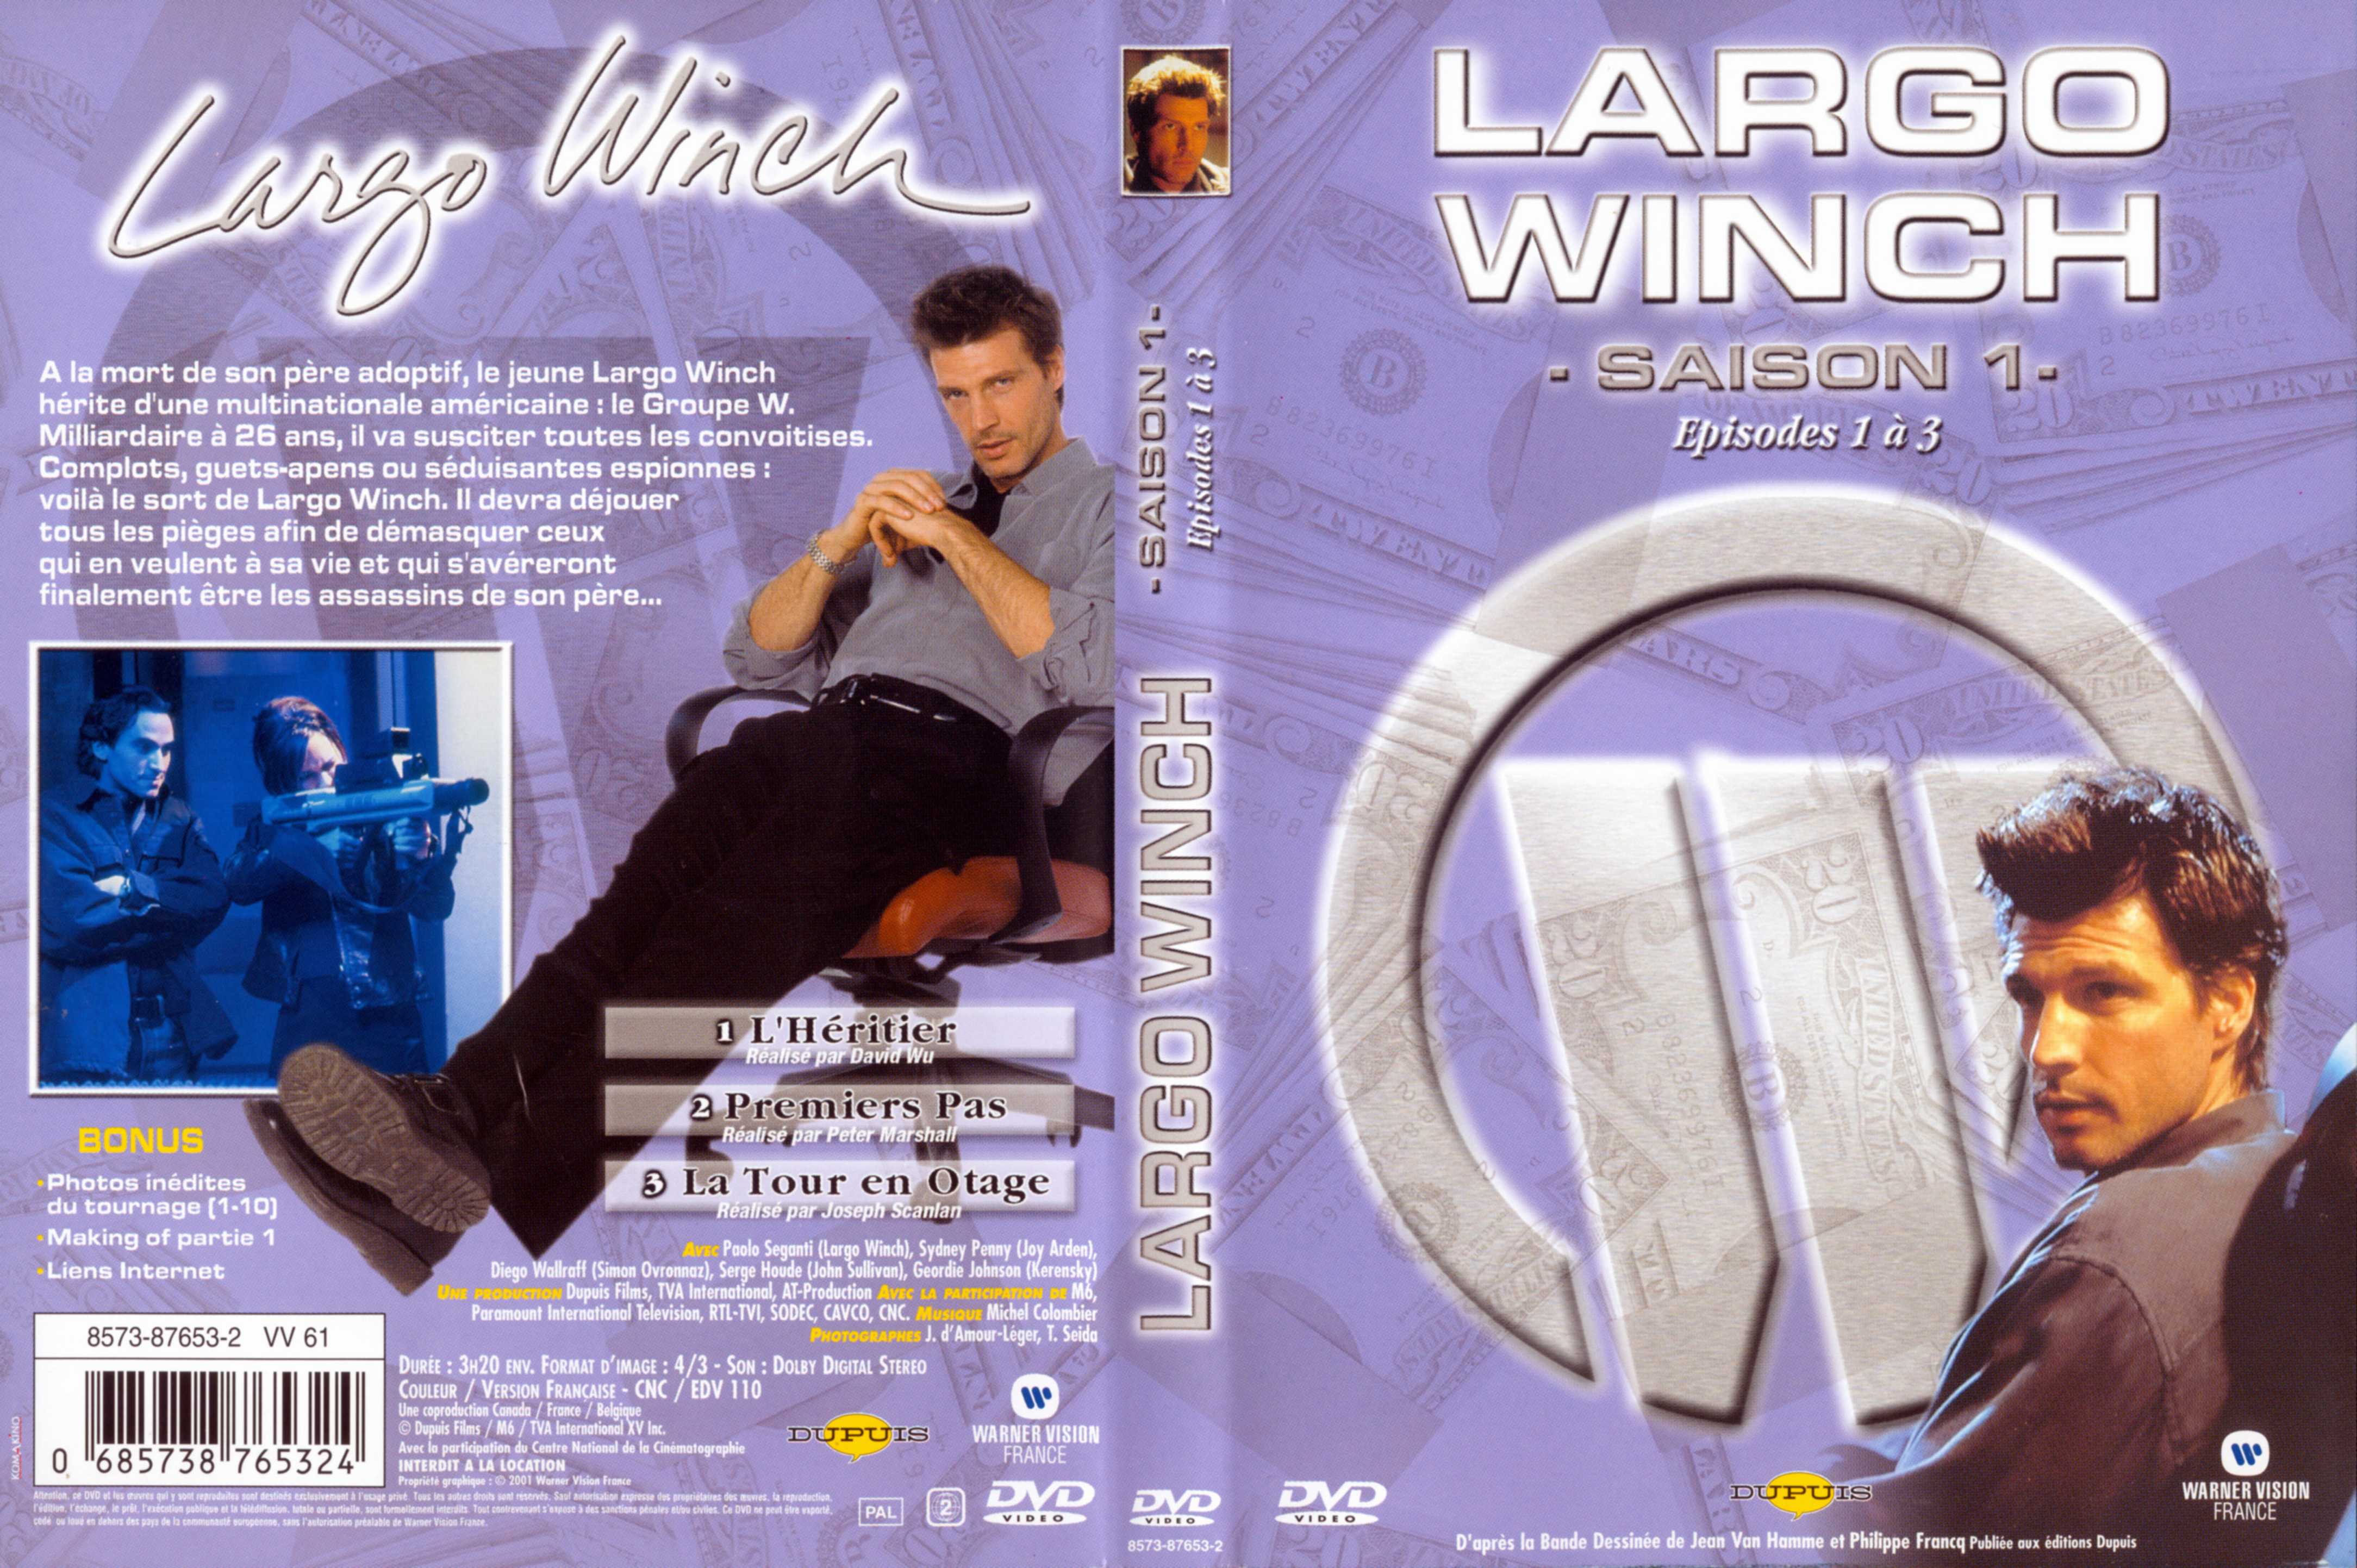 Jaquette DVD Largo Winch Saison 1 vol 01